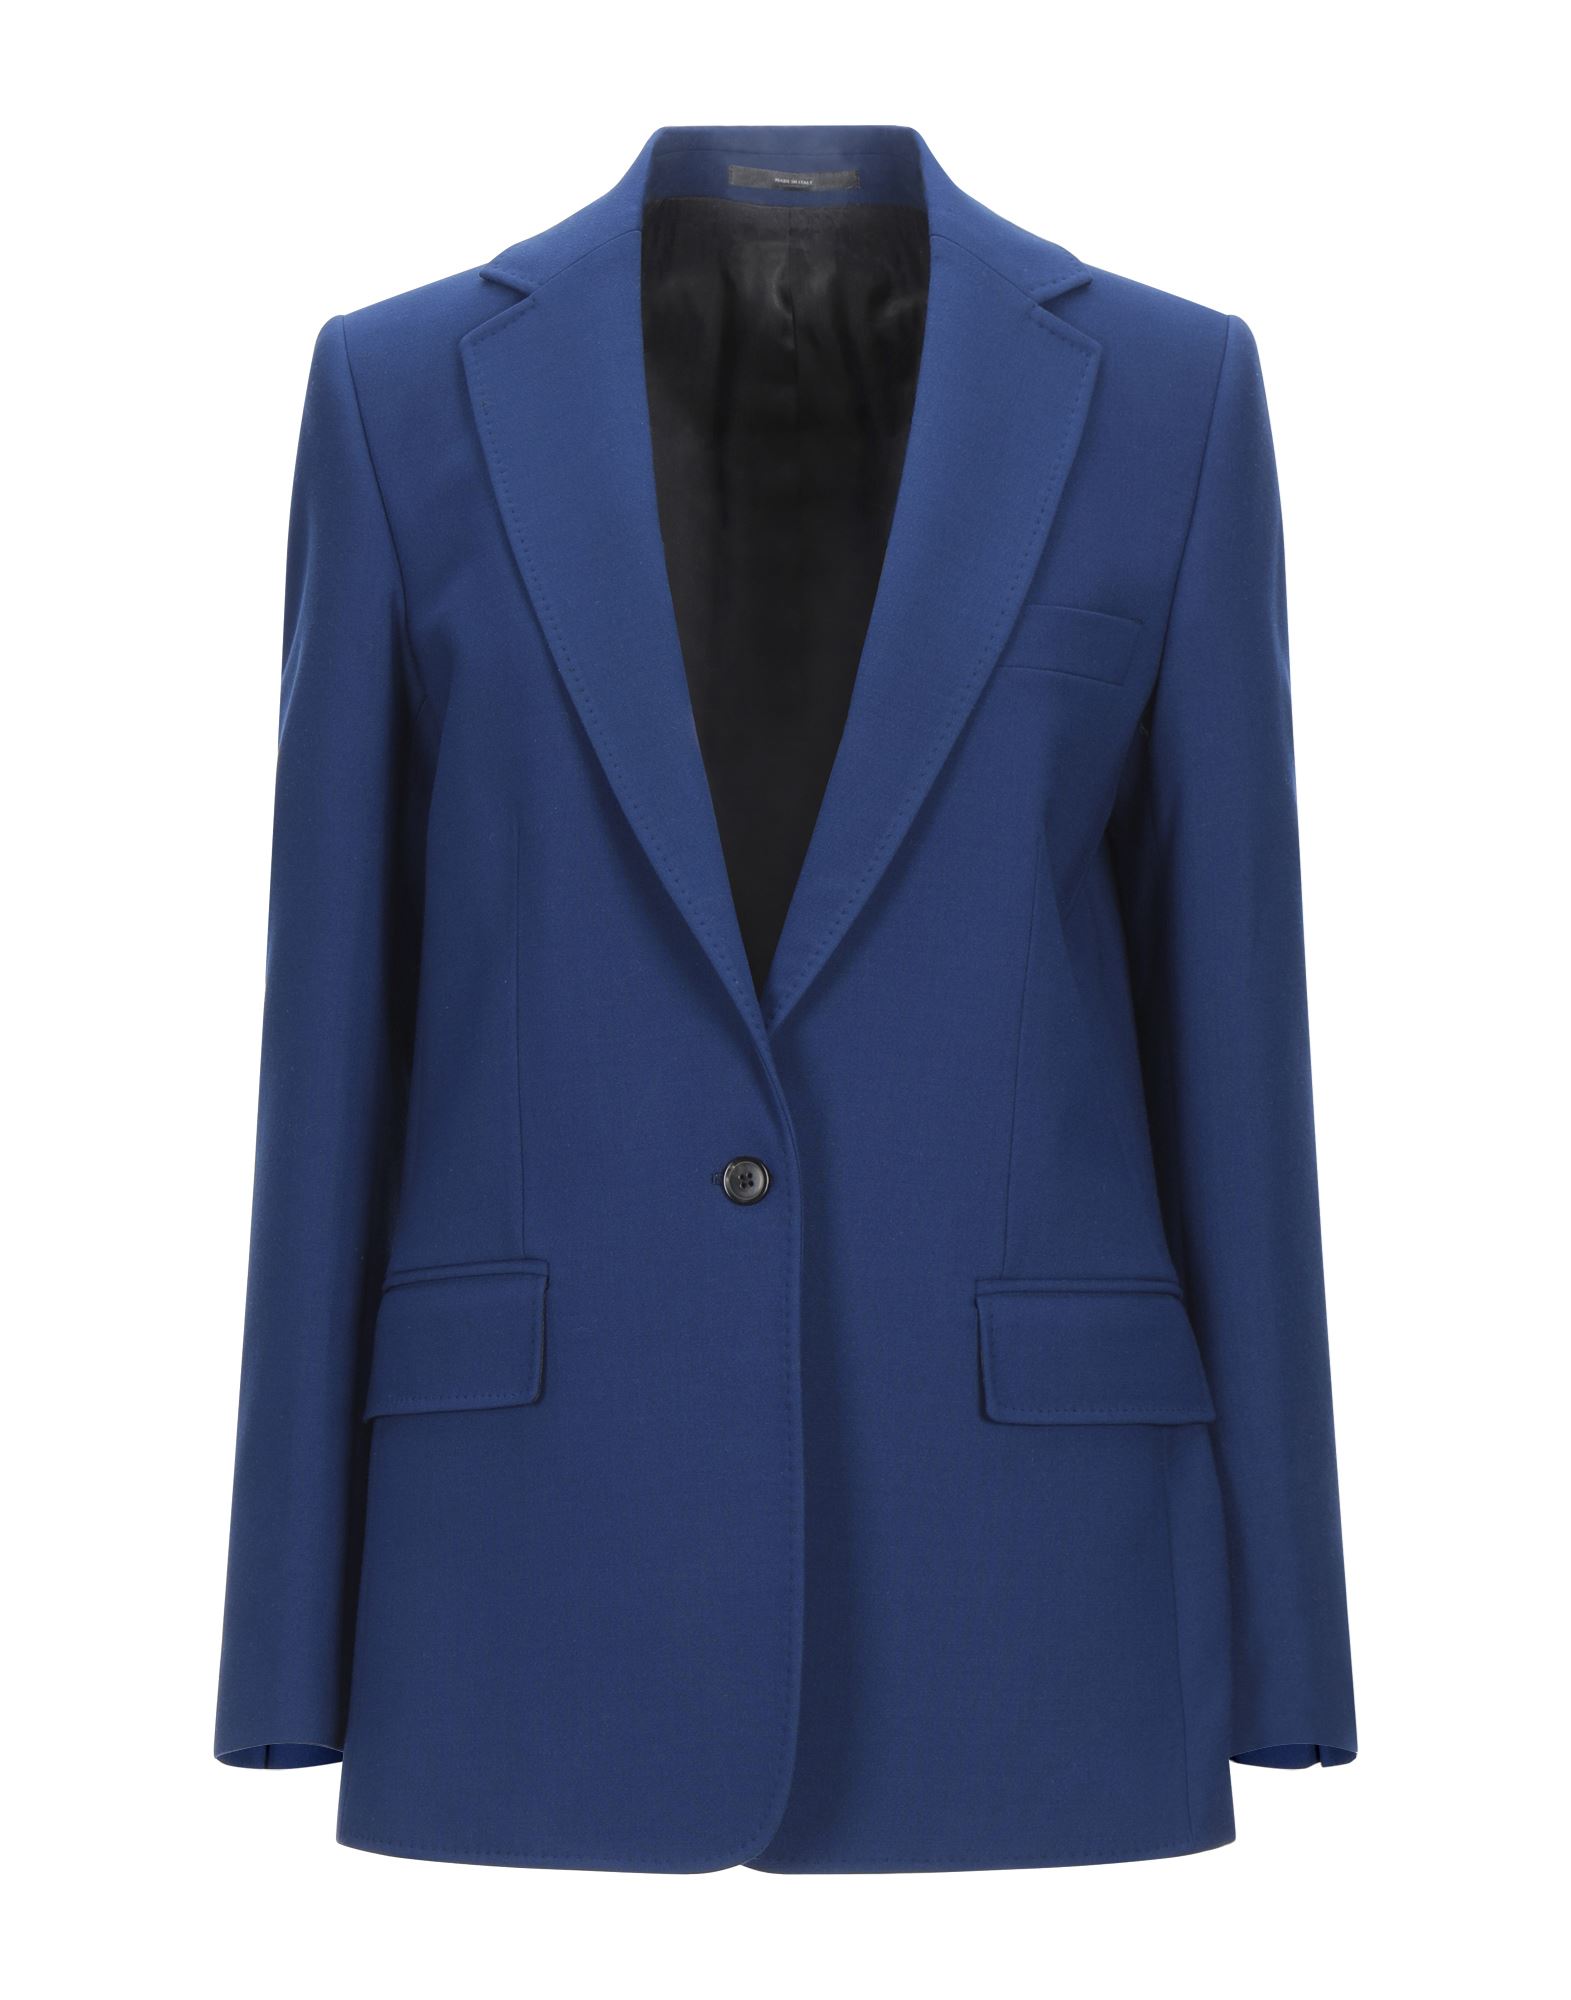 PAUL SMITH Suit jackets - Item 49614735